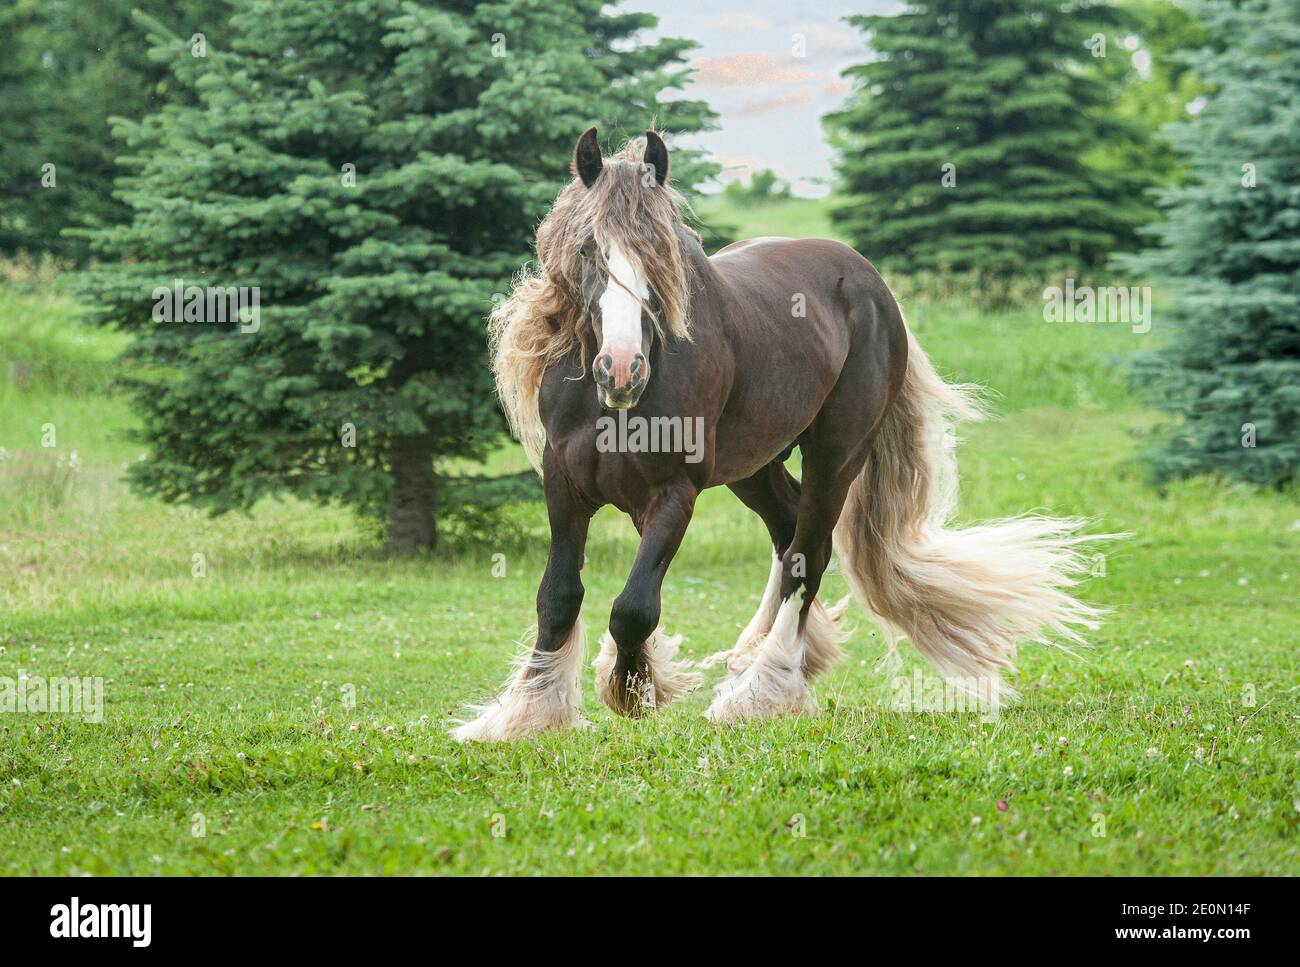 Gypsy Vanner Cavallo stallone di mele argentate sfrenato in paddock aperto Foto Stock